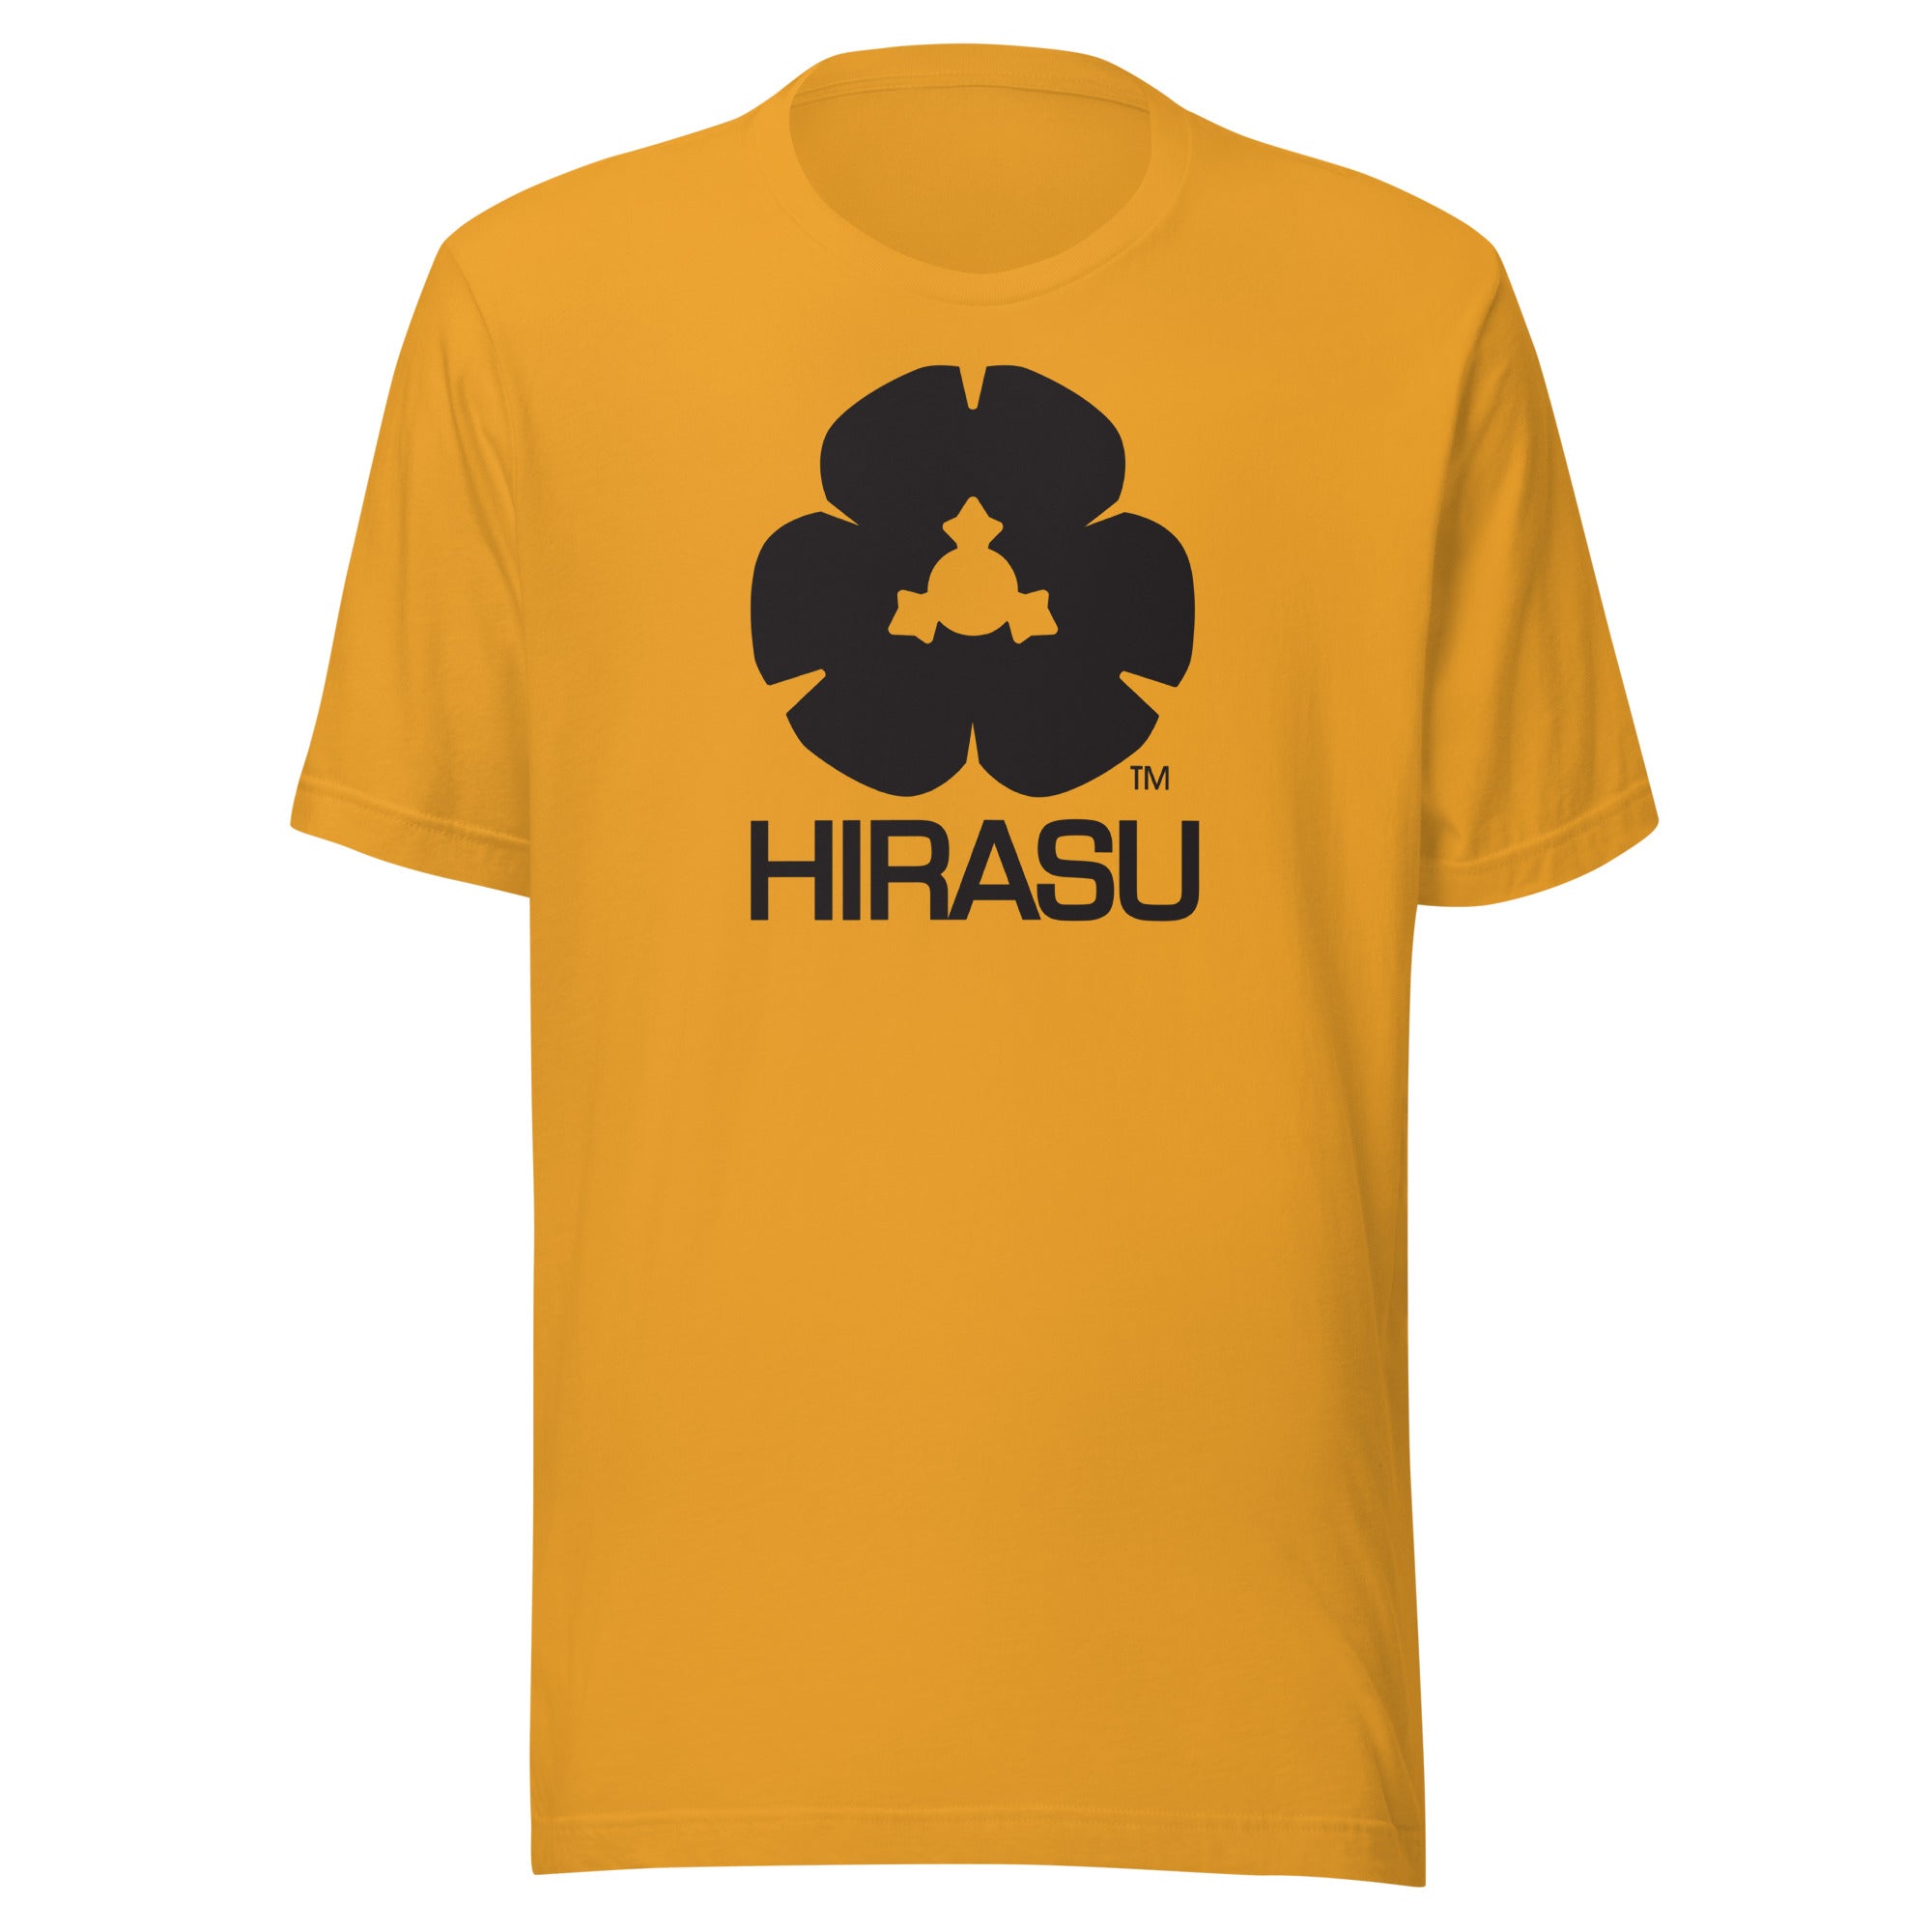 HIRASU | T-shirt | Bella + Canvas